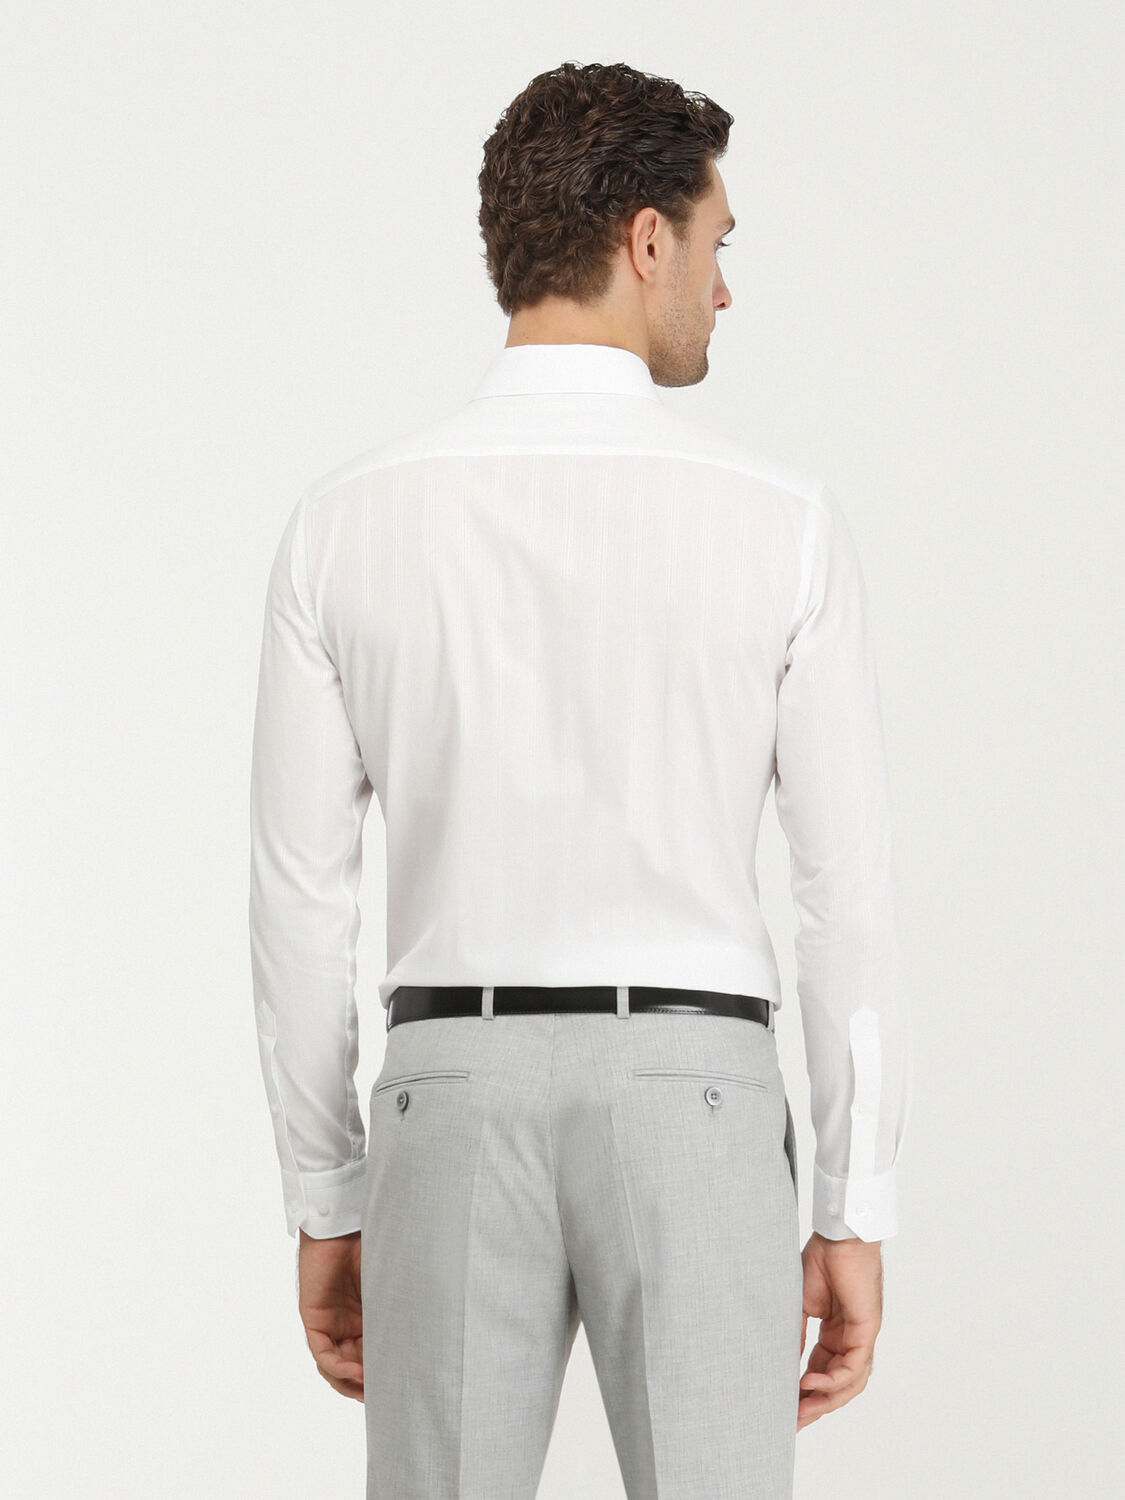 Beyaz Slim Fit Dokuma Klasik %100 Pamuk Gömlek